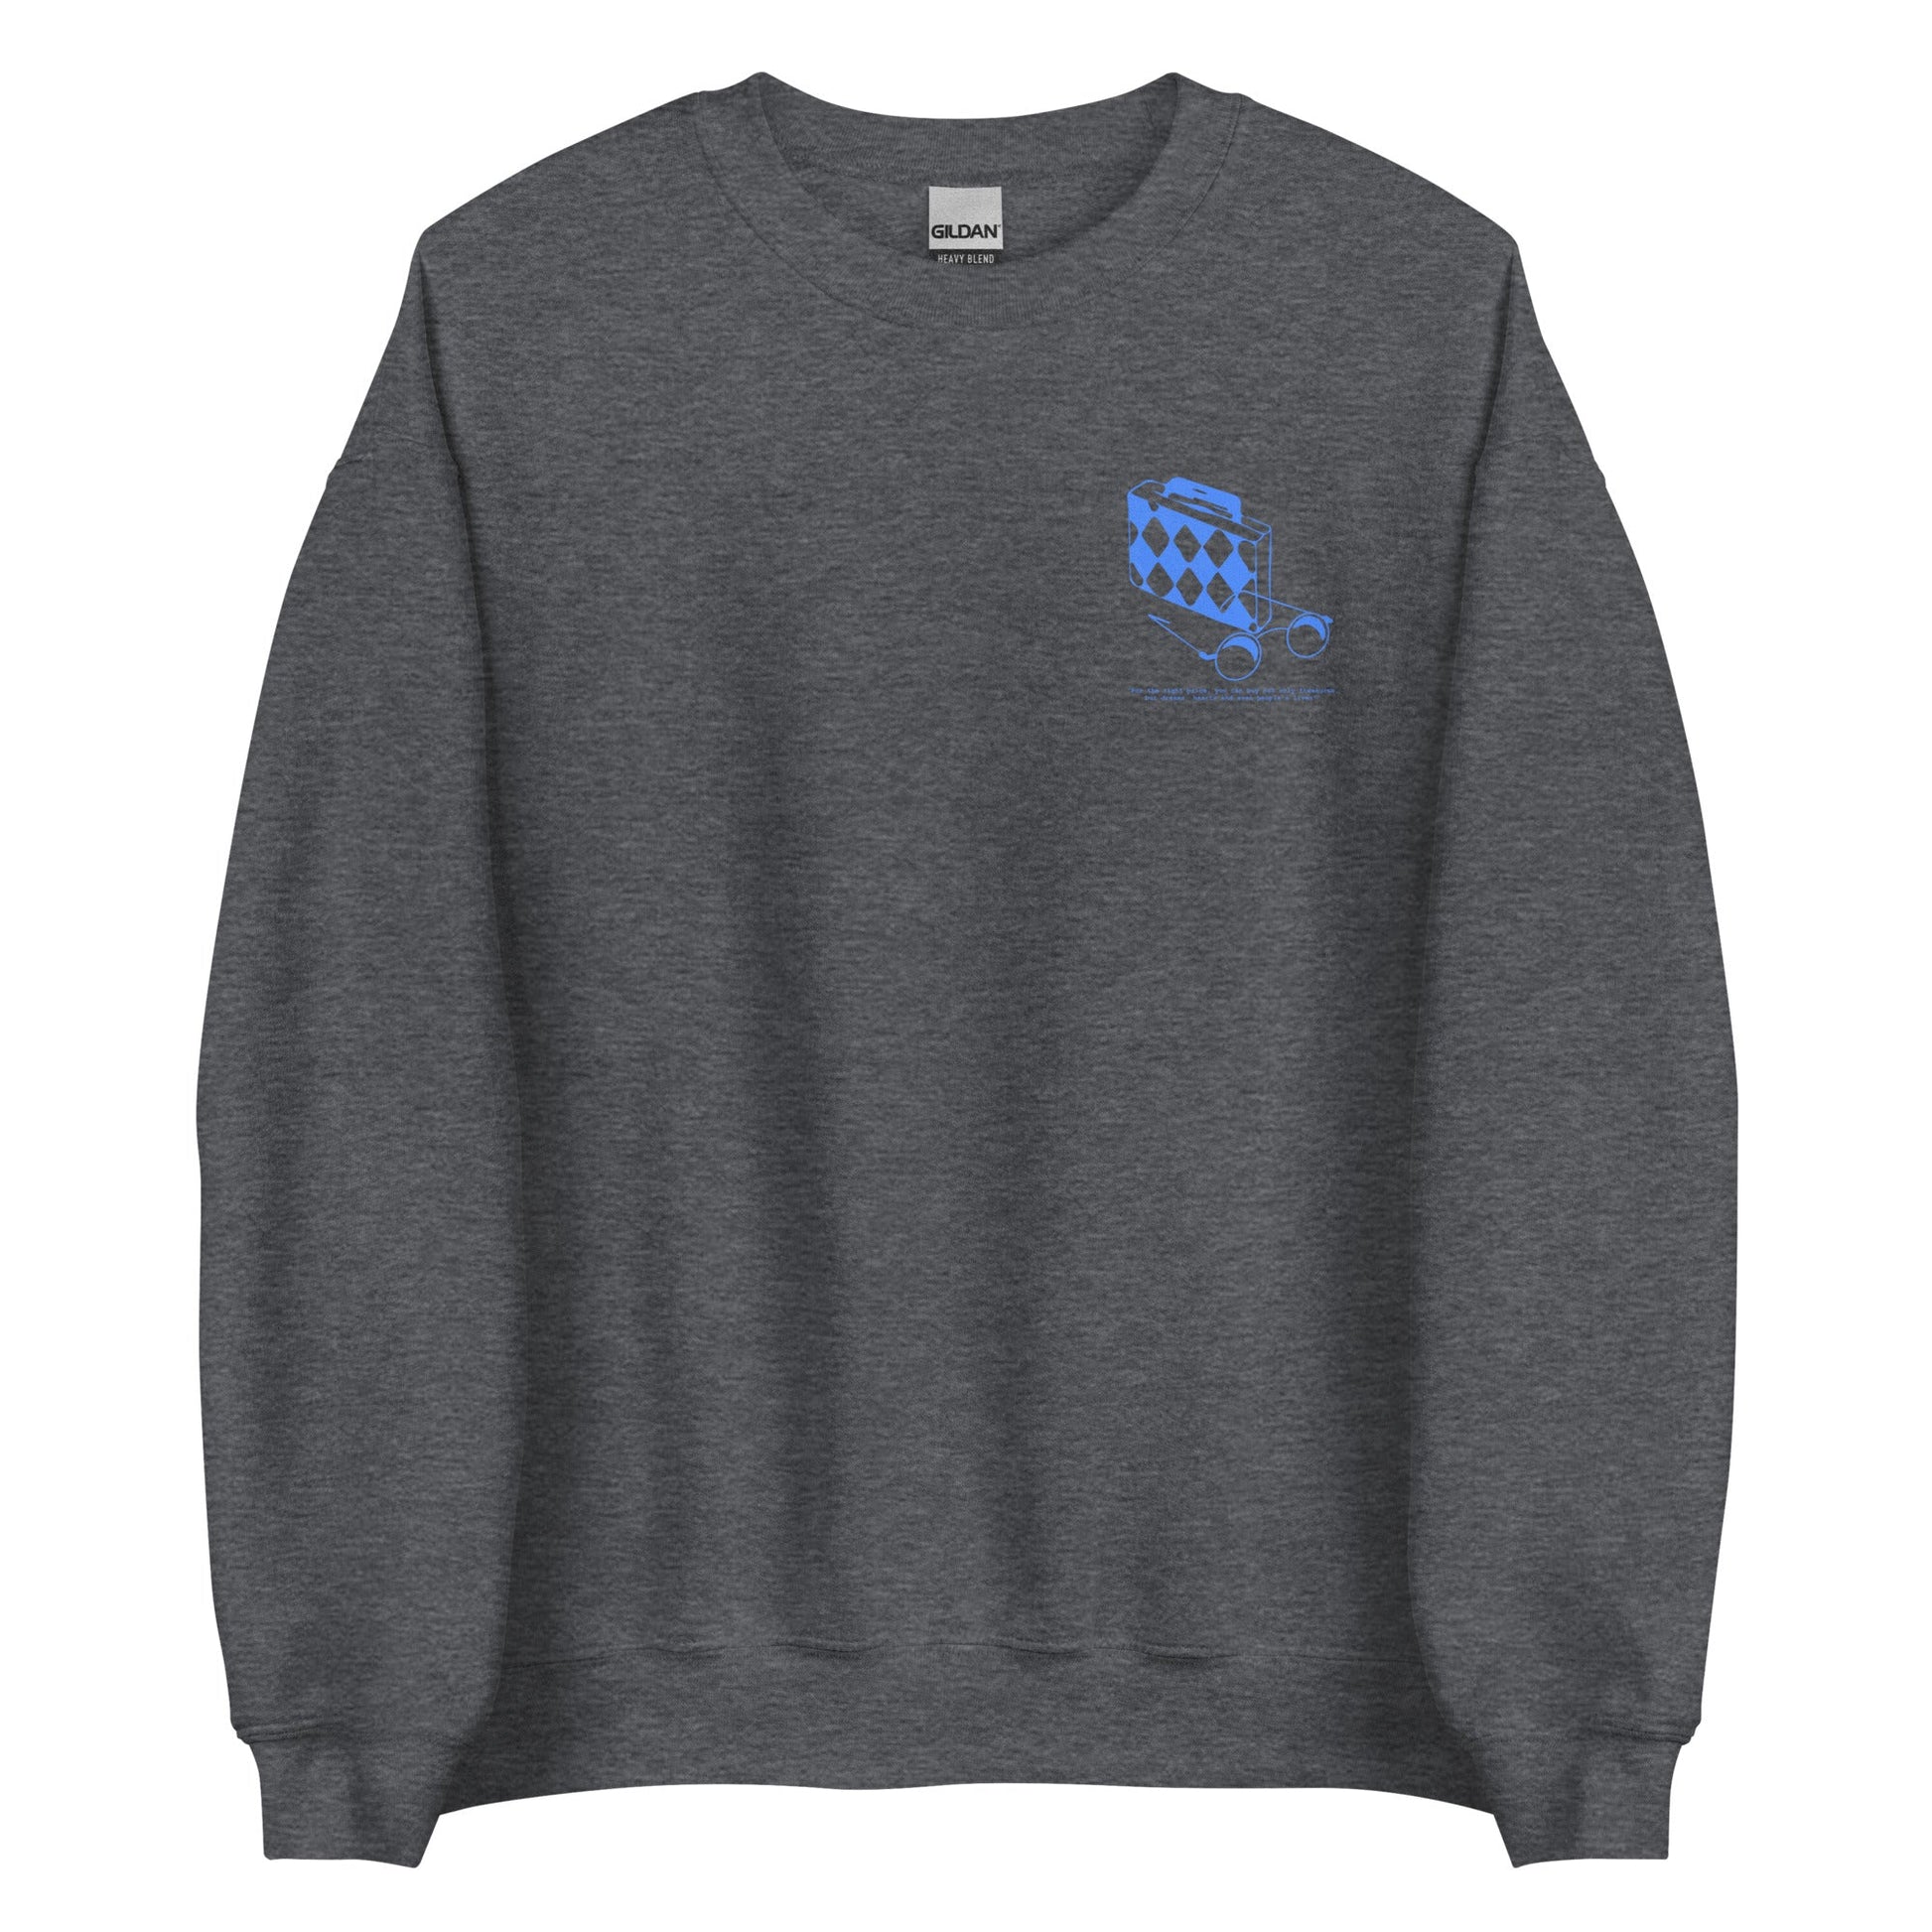 Emission - Sweatshirt - Project NuMa -